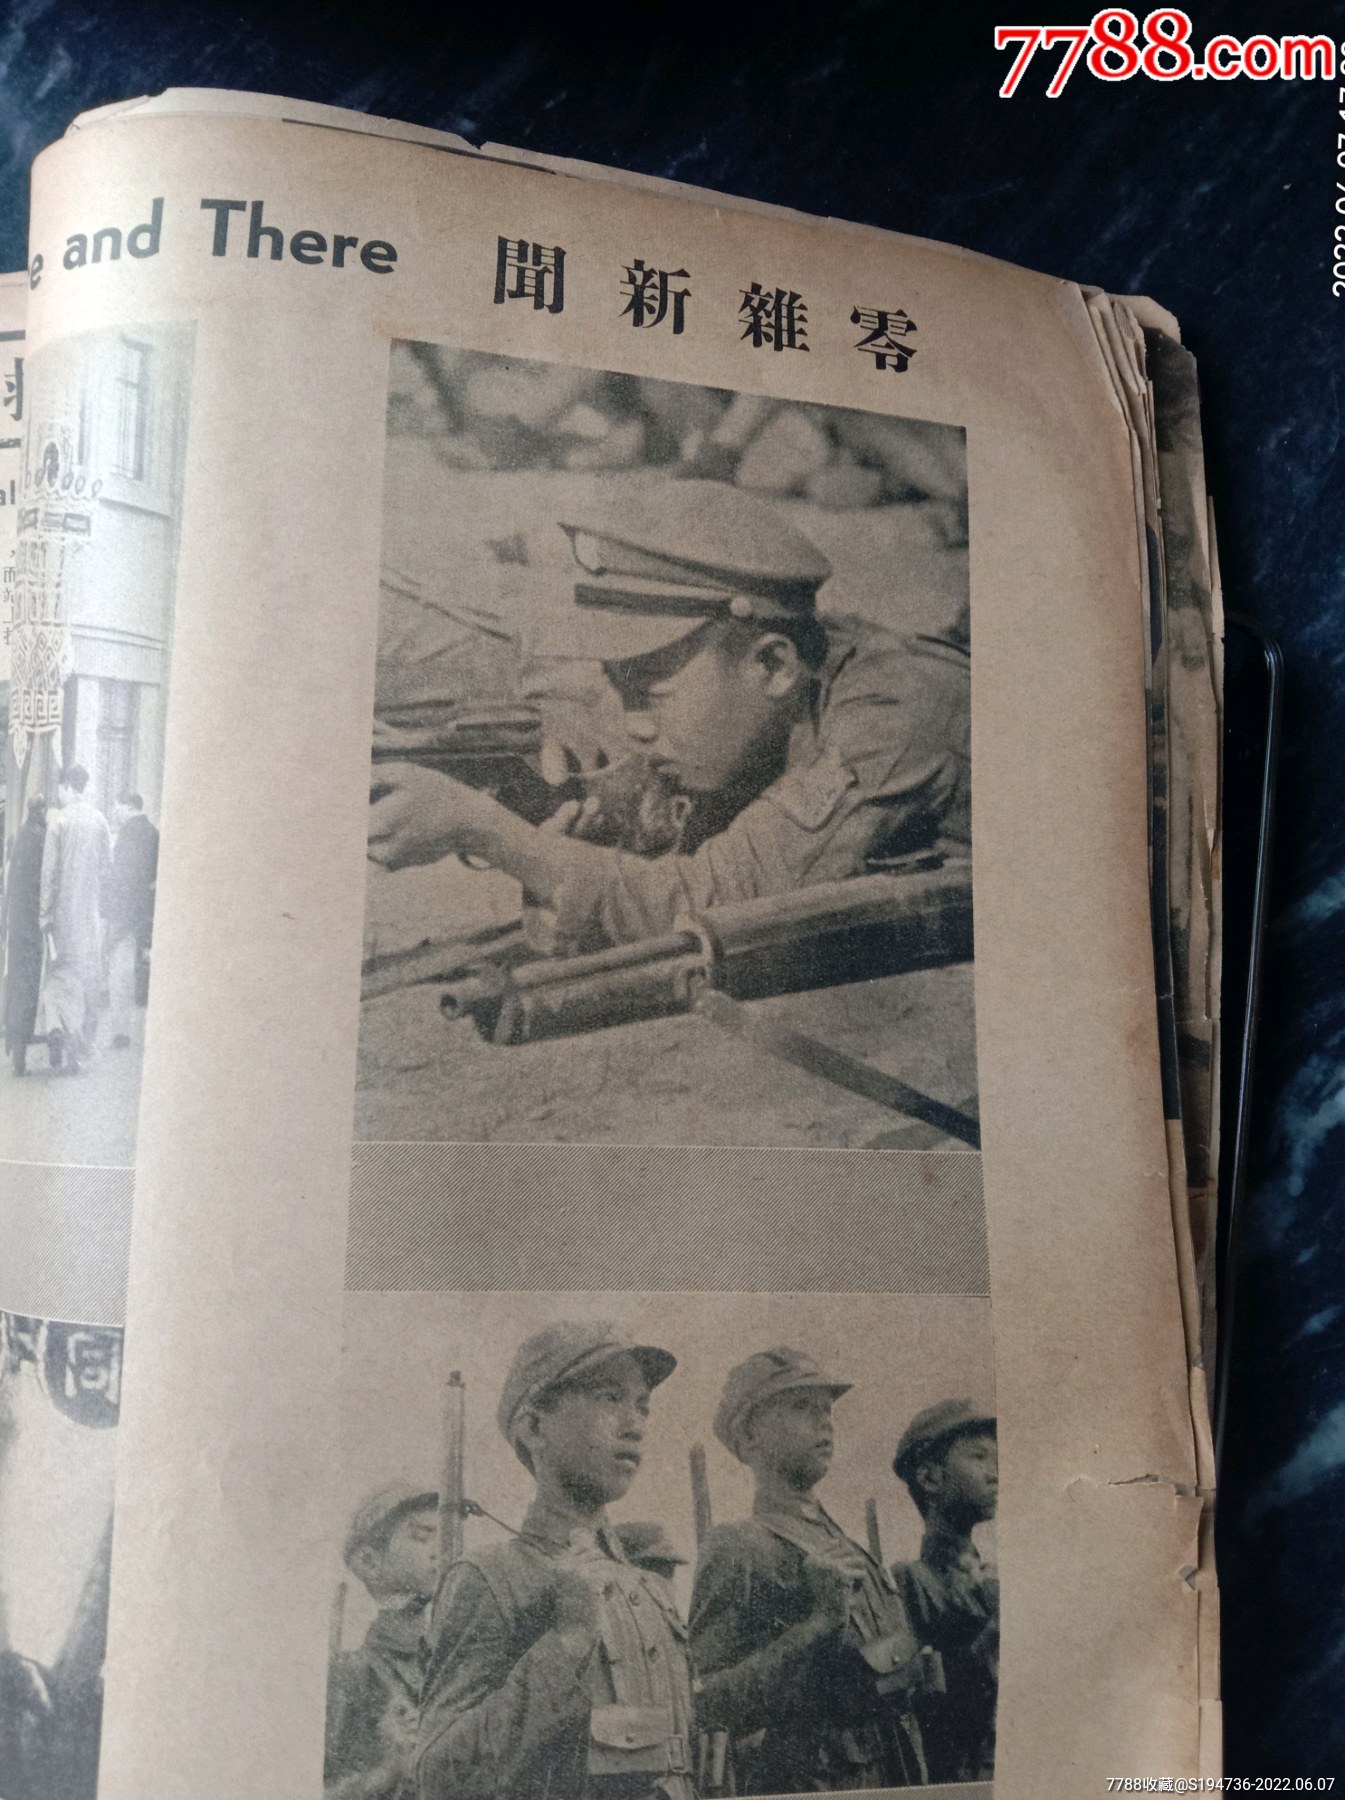 民國時期抗戰畫報《大美畫報》1939年版。_價格438元_第24張_